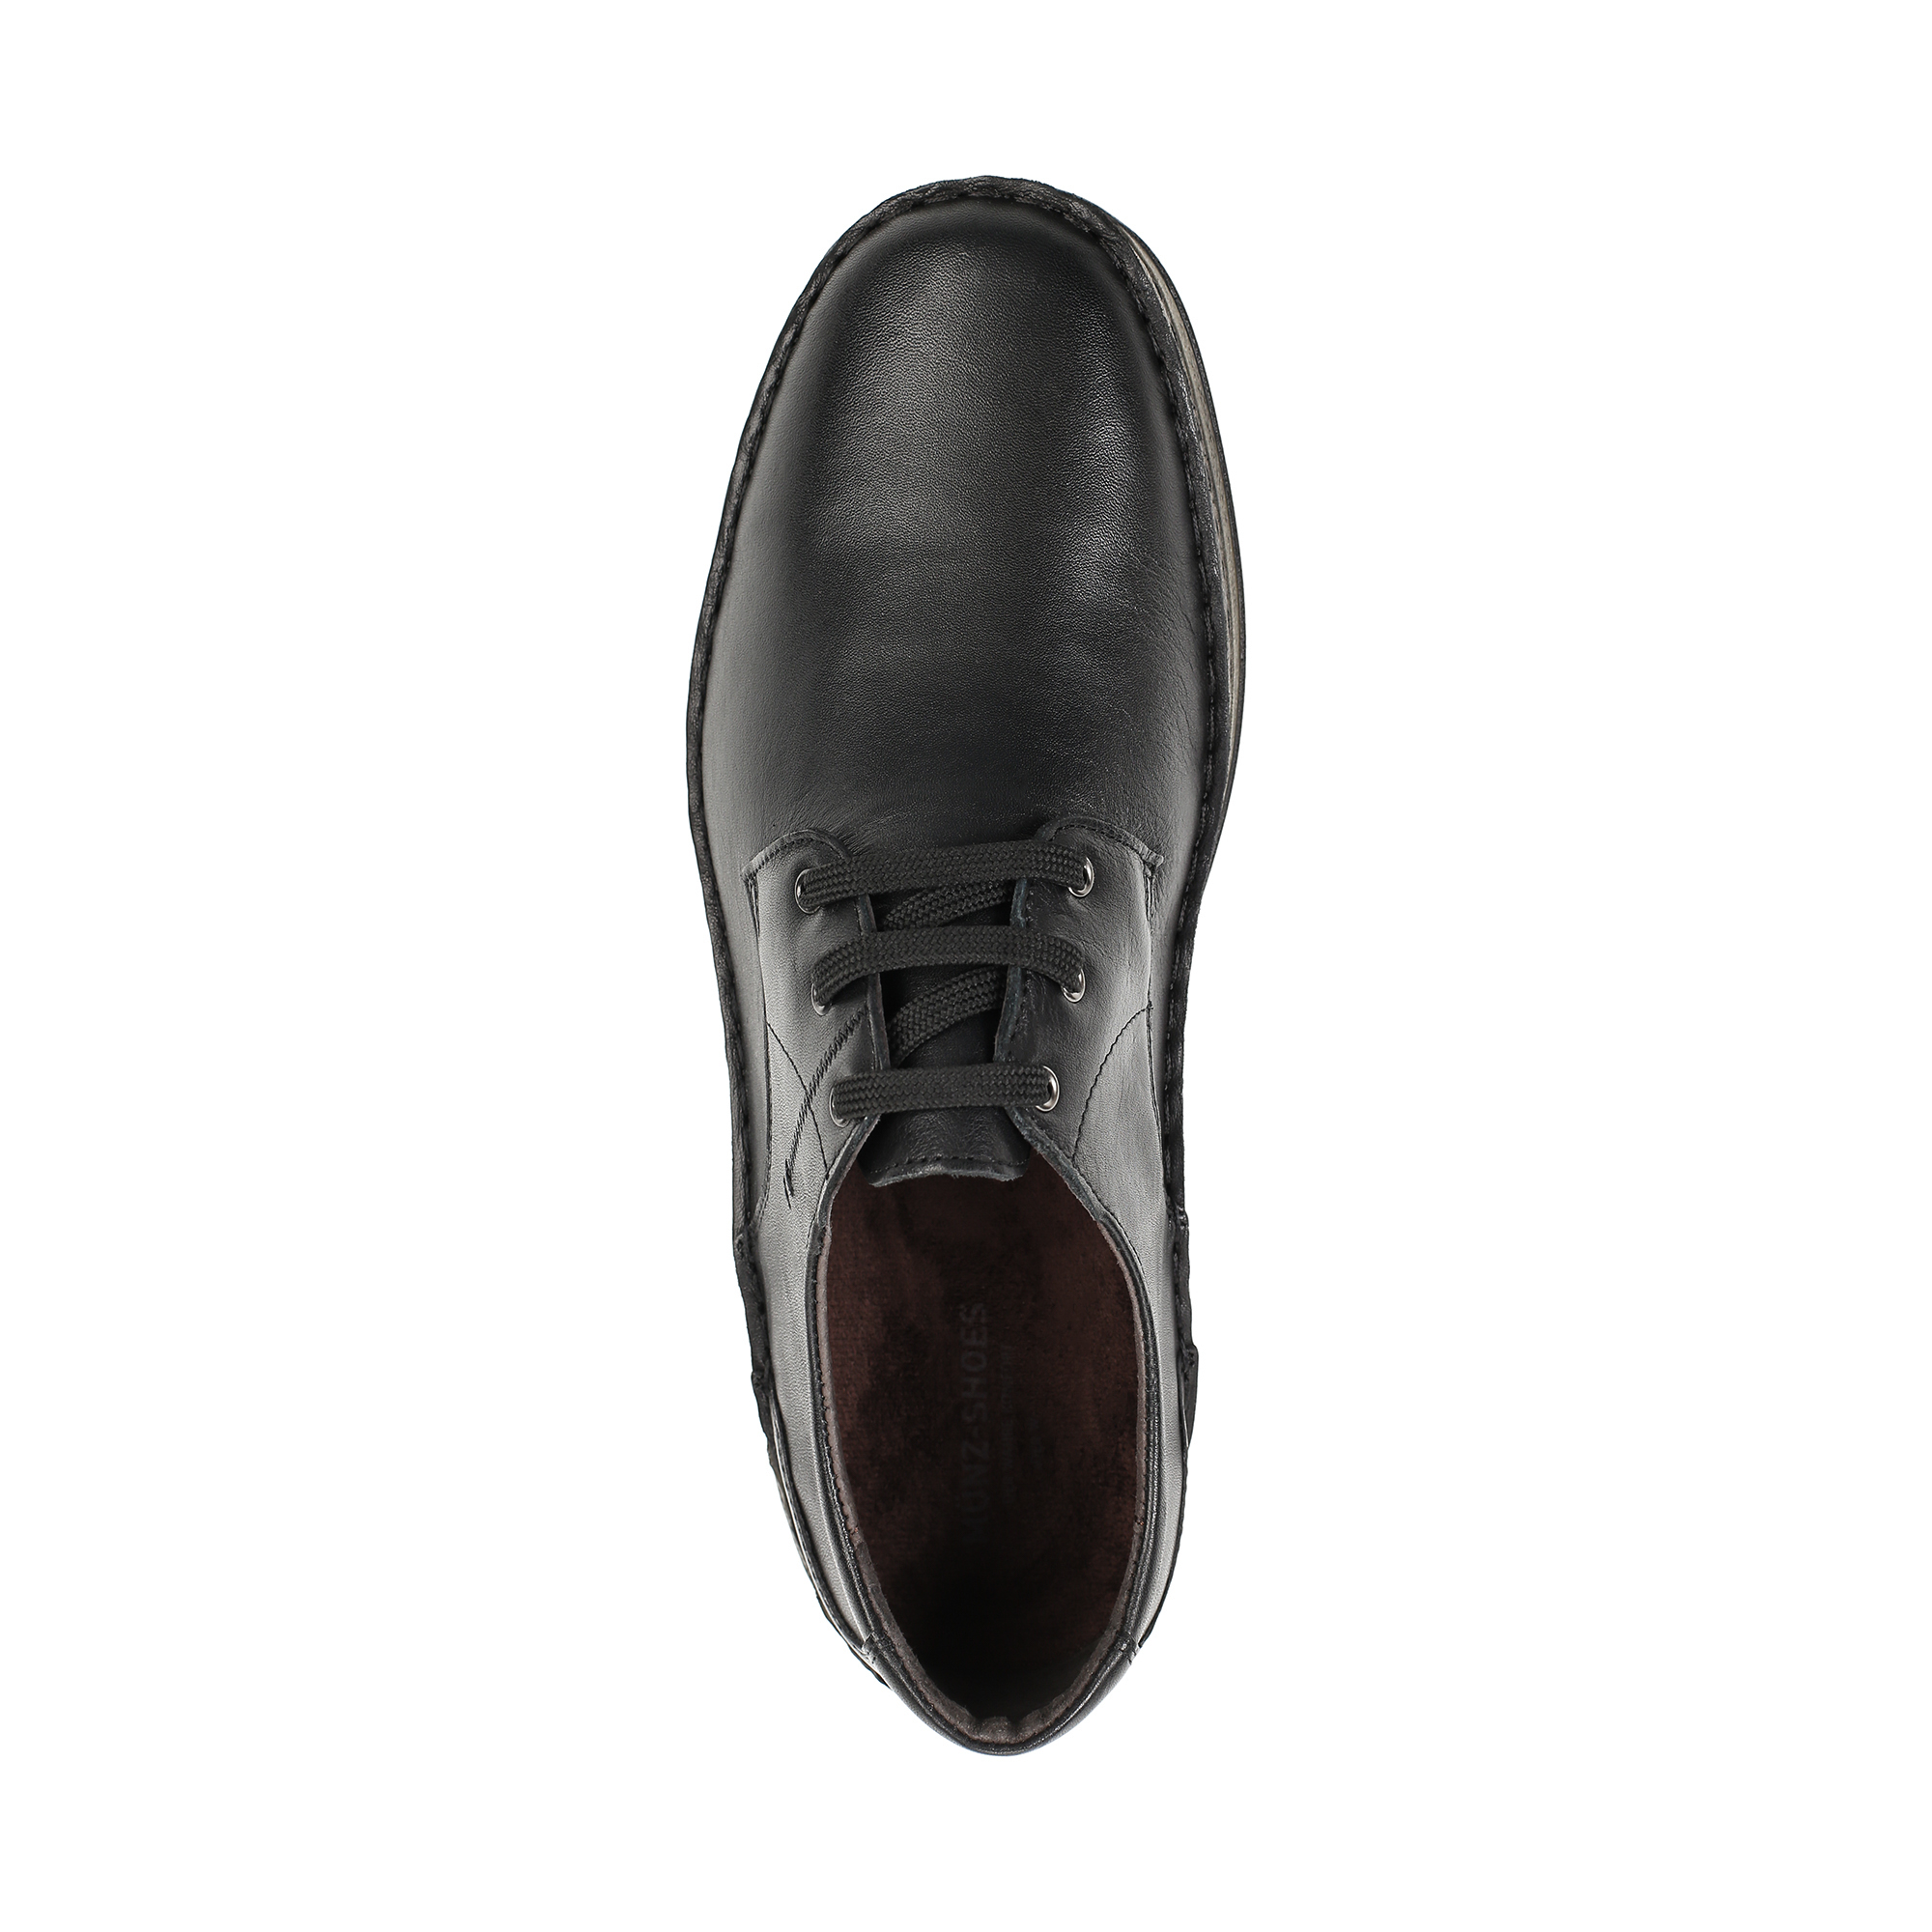 Туфли/полуботинки MUNZ Shoes 331-064A-11021, цвет черный, размер 41 - фото 5